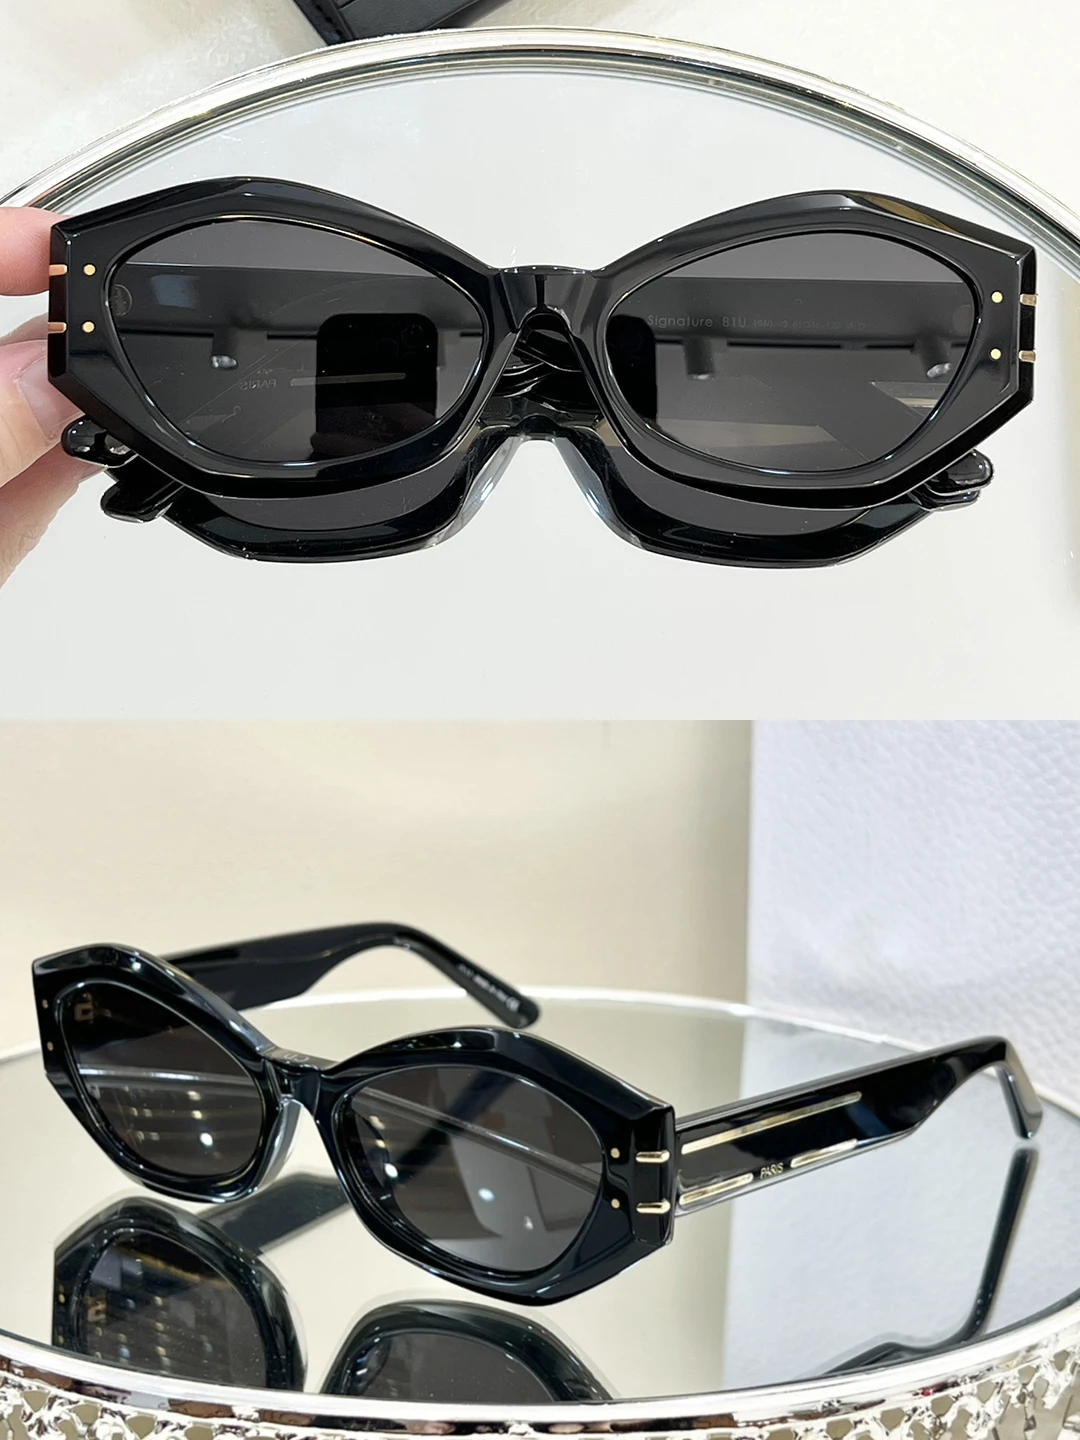 

Original Customized Top Quality Fashion CDB1U Trimmed Black Sunglasses for Women UA400 Tourism Beach Party Sunglasses for Man